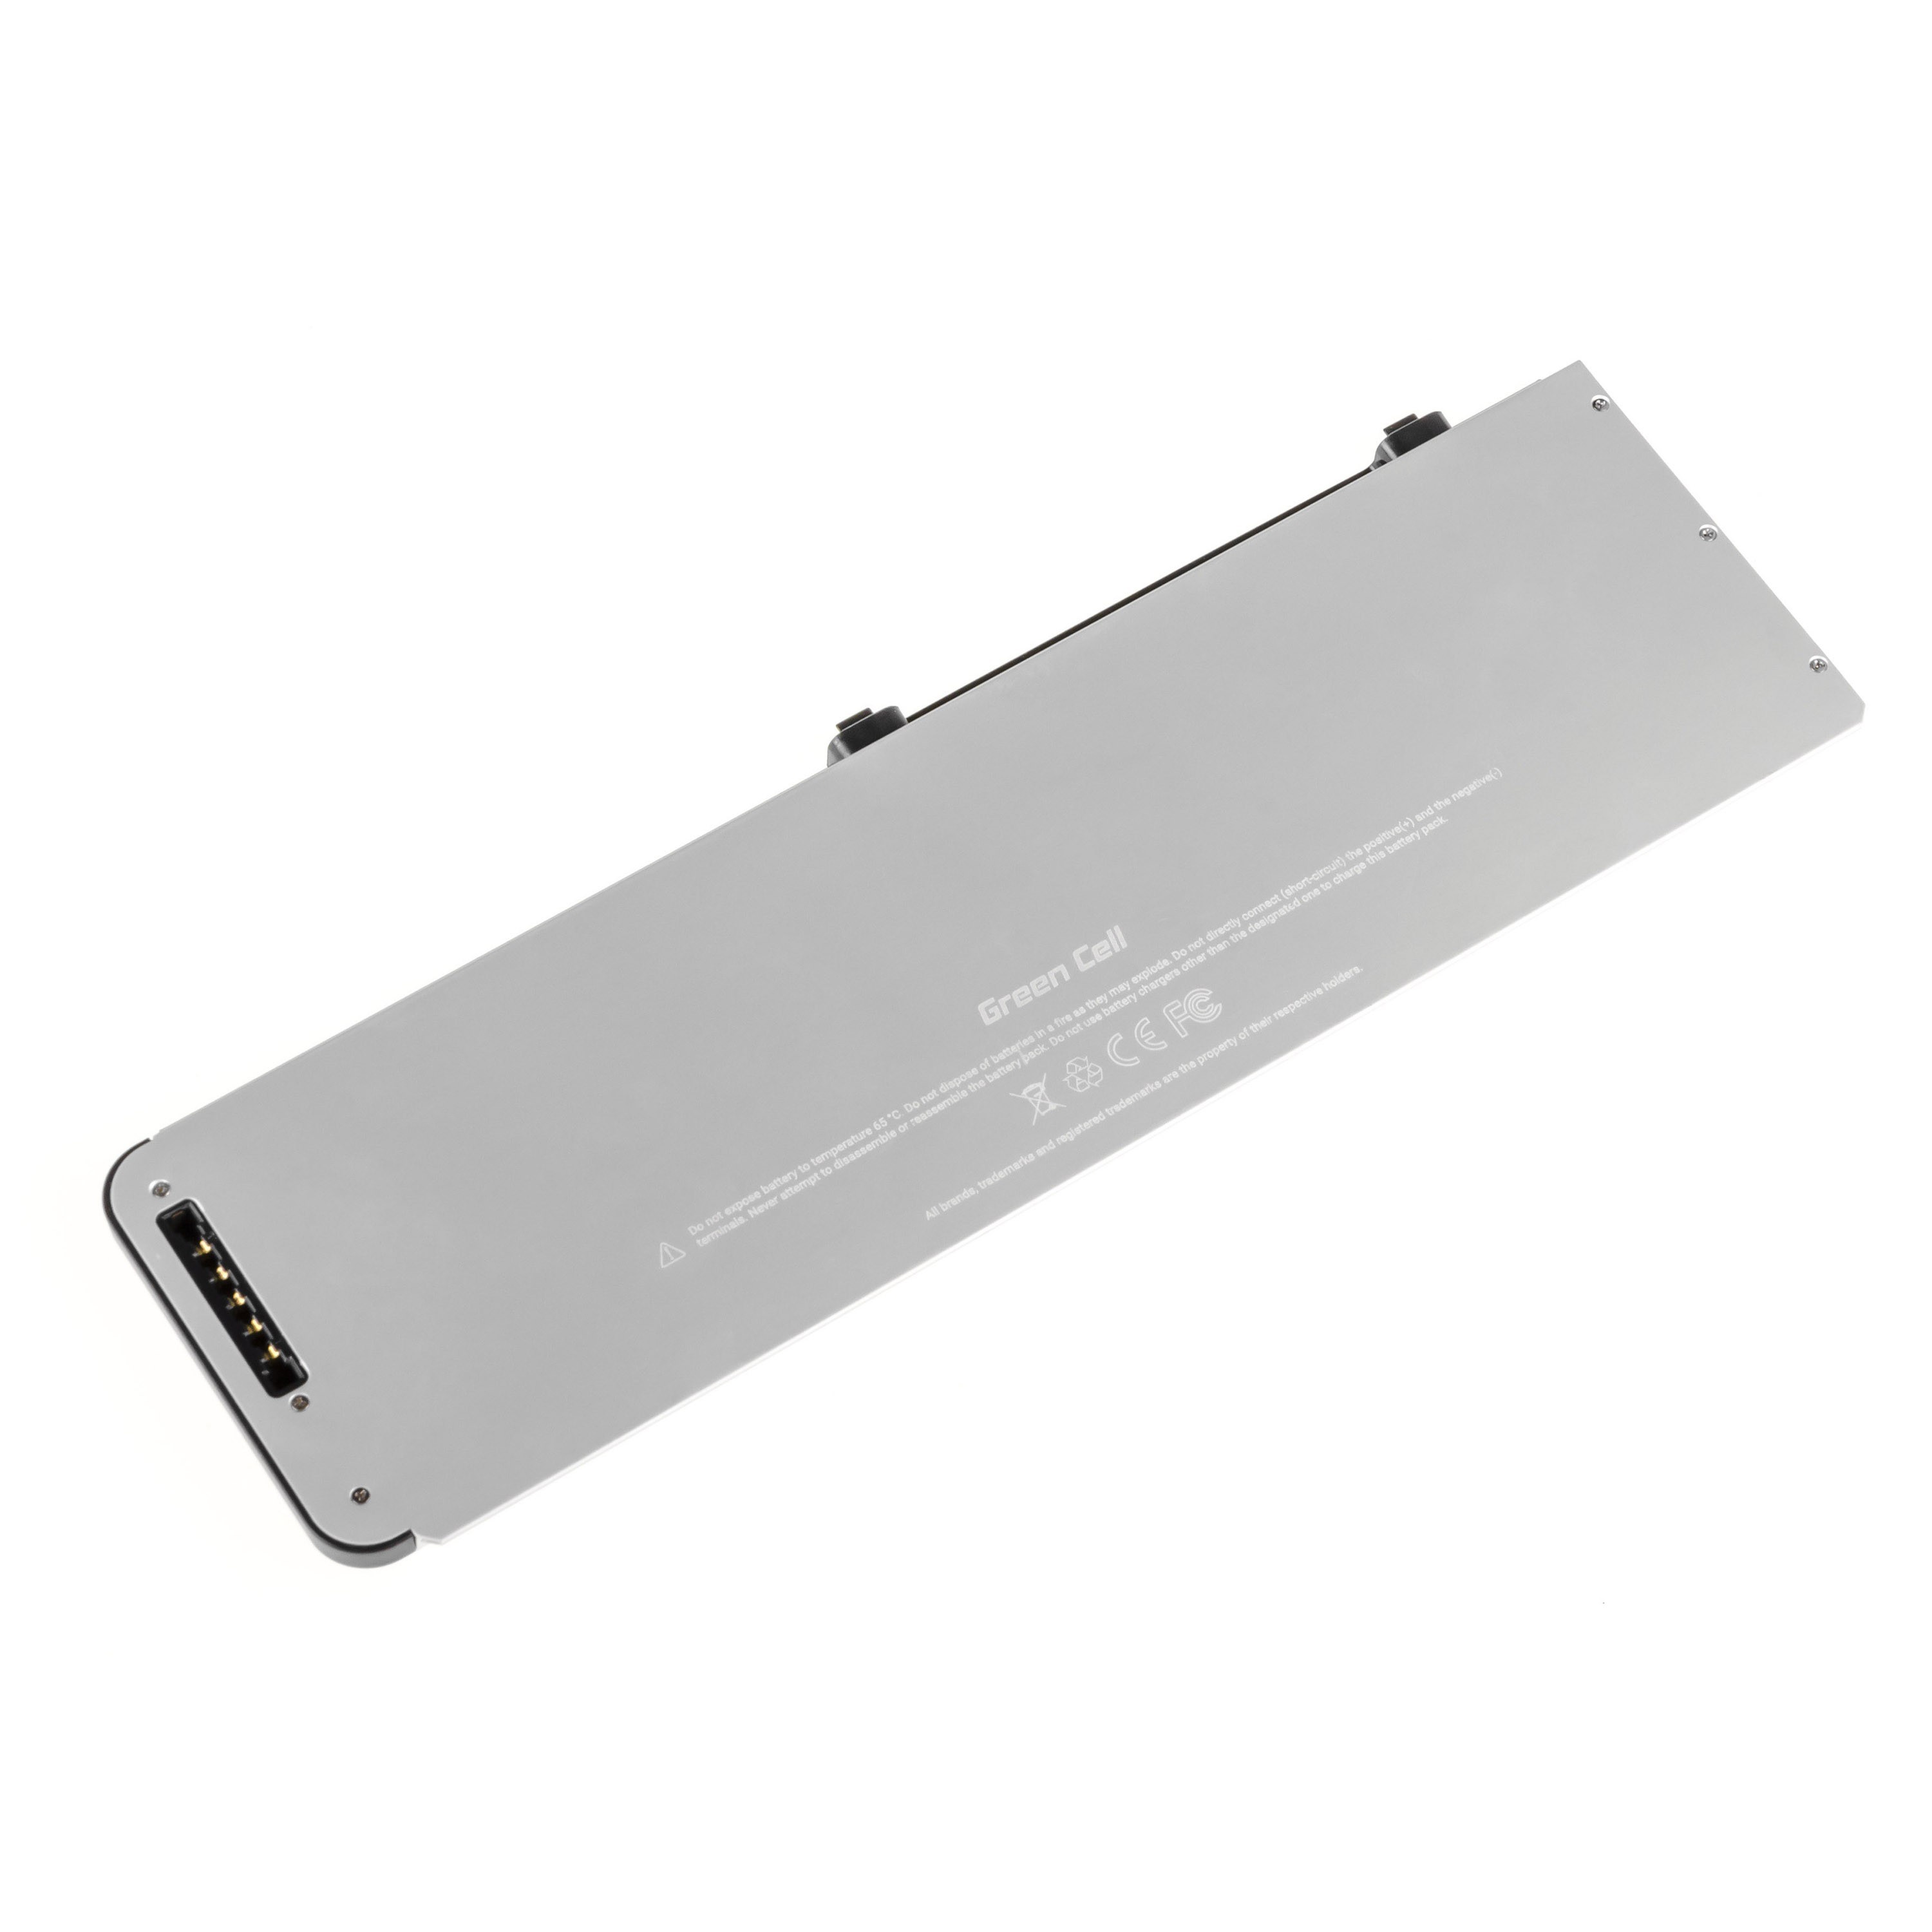 PRO Batterij voor Apple Macbook Pro 15 A1286 2008-2009) / 11,1V 5200mAh